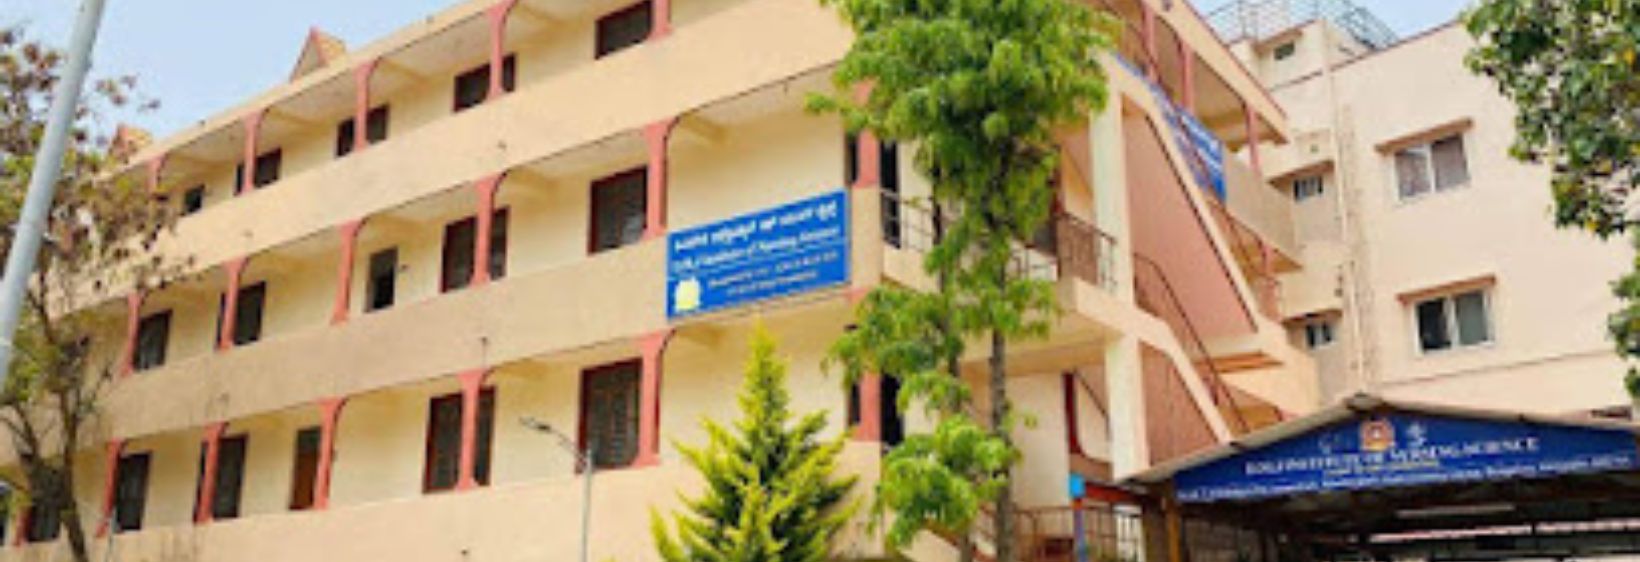 D M J Institute of Nursing - Bangalore